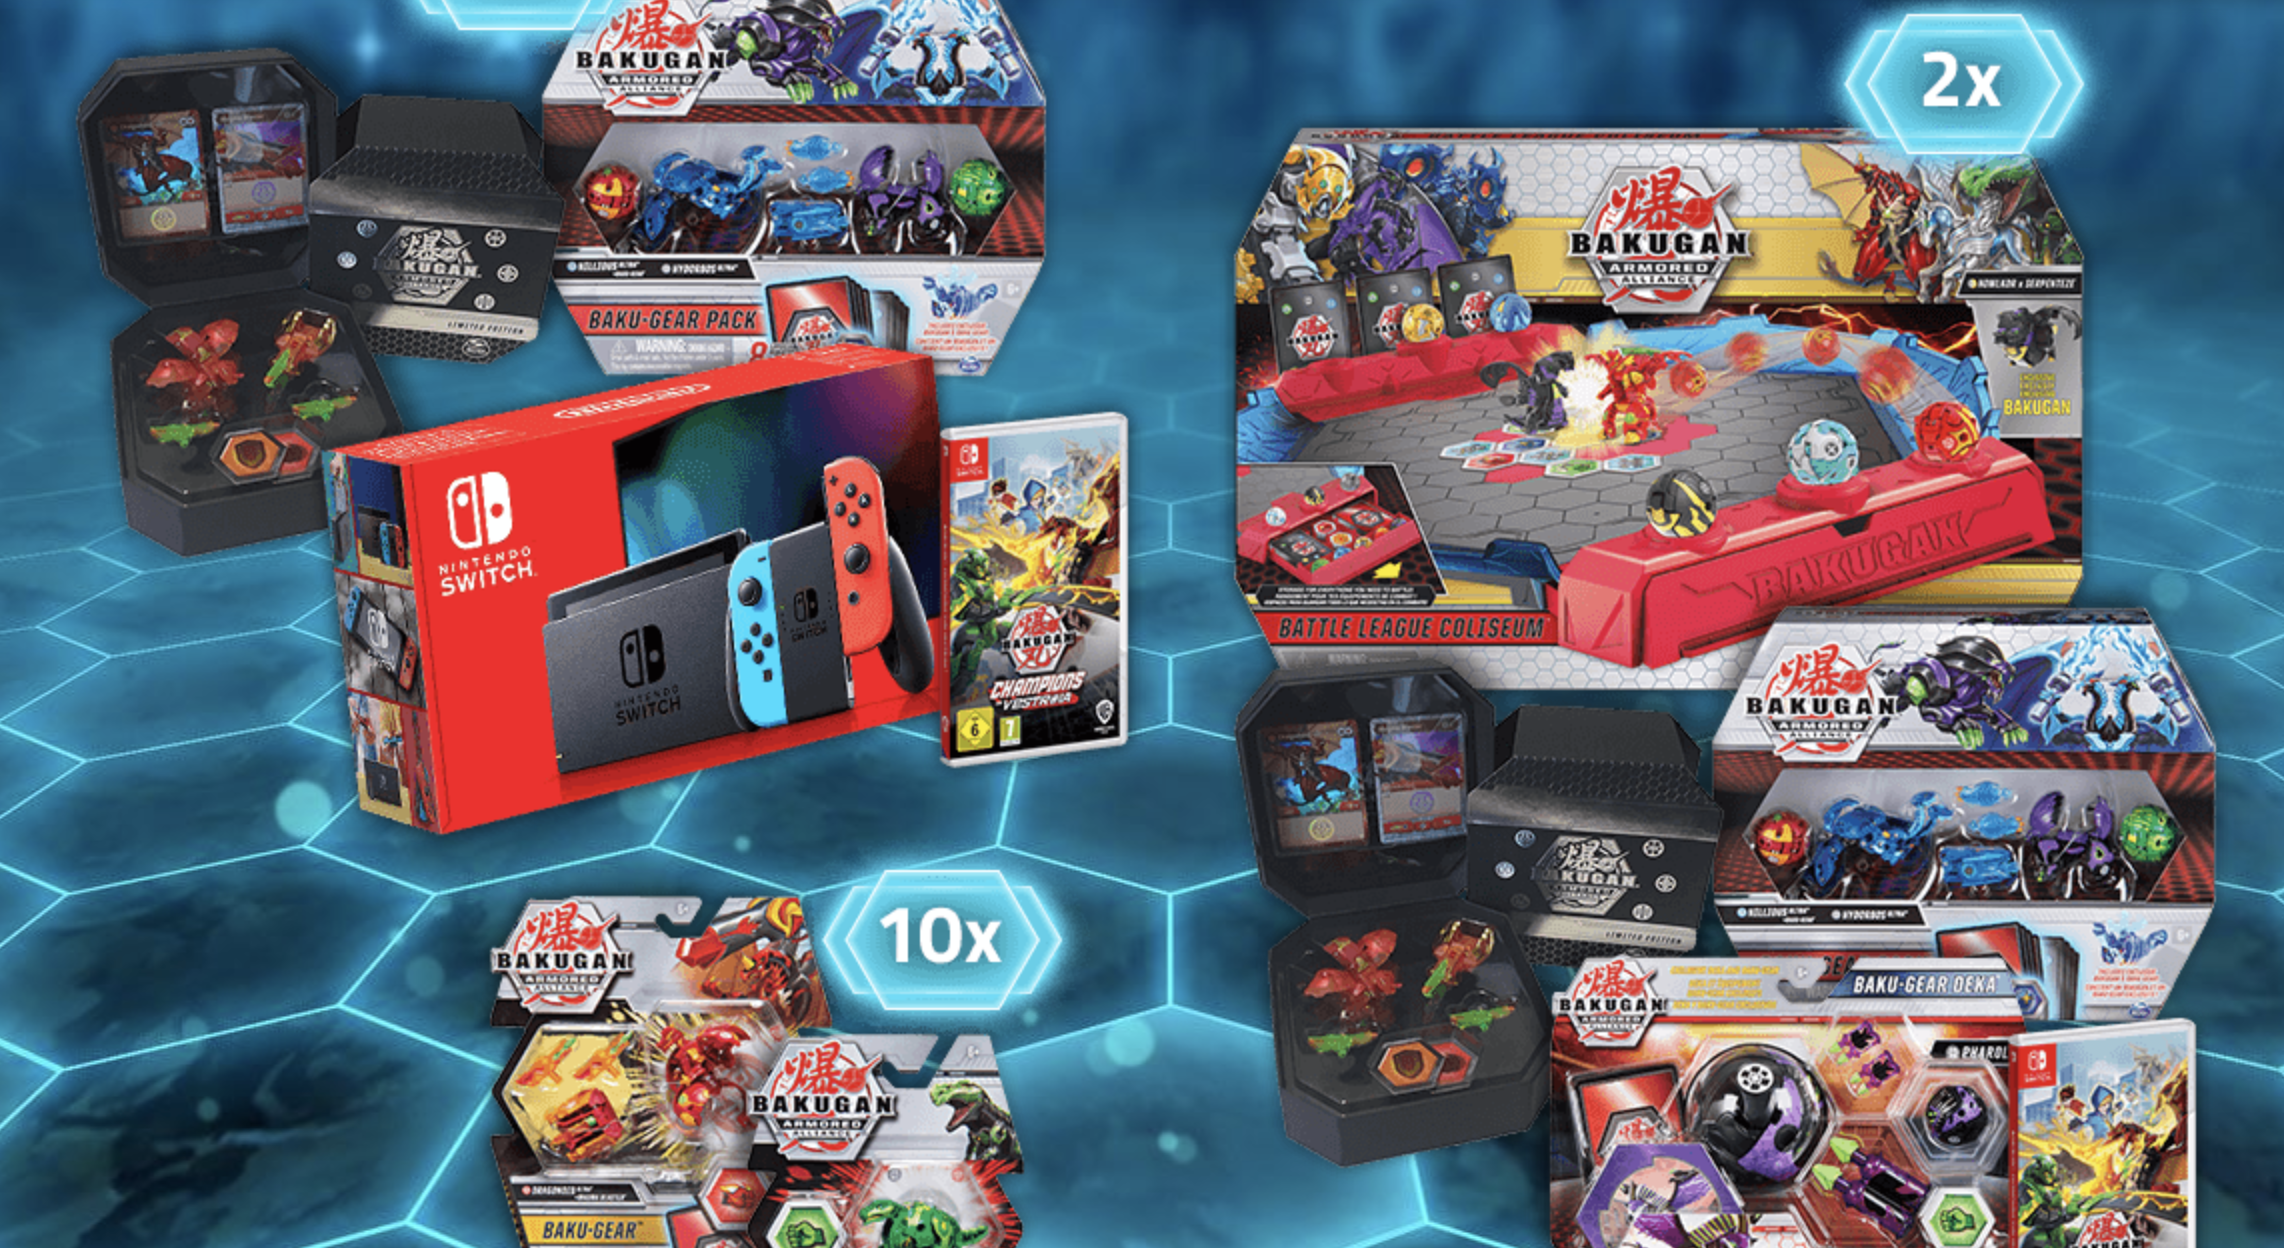 TOGGO Gewinnspiel: Nintendo Switch & Bakugan-Pakete zu gewinnen